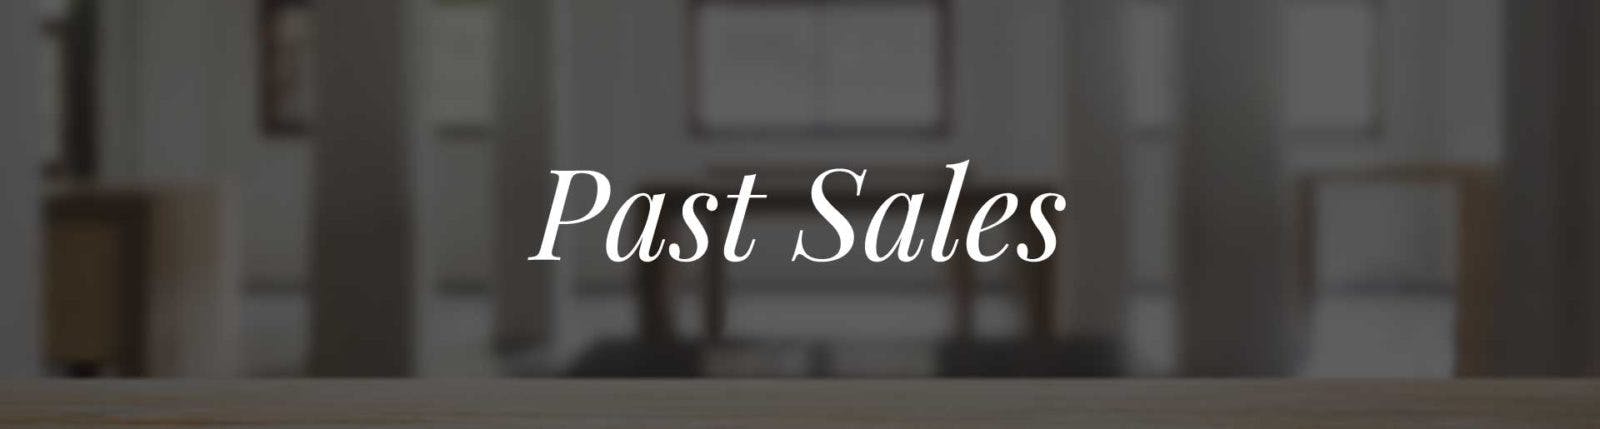 Past Sales